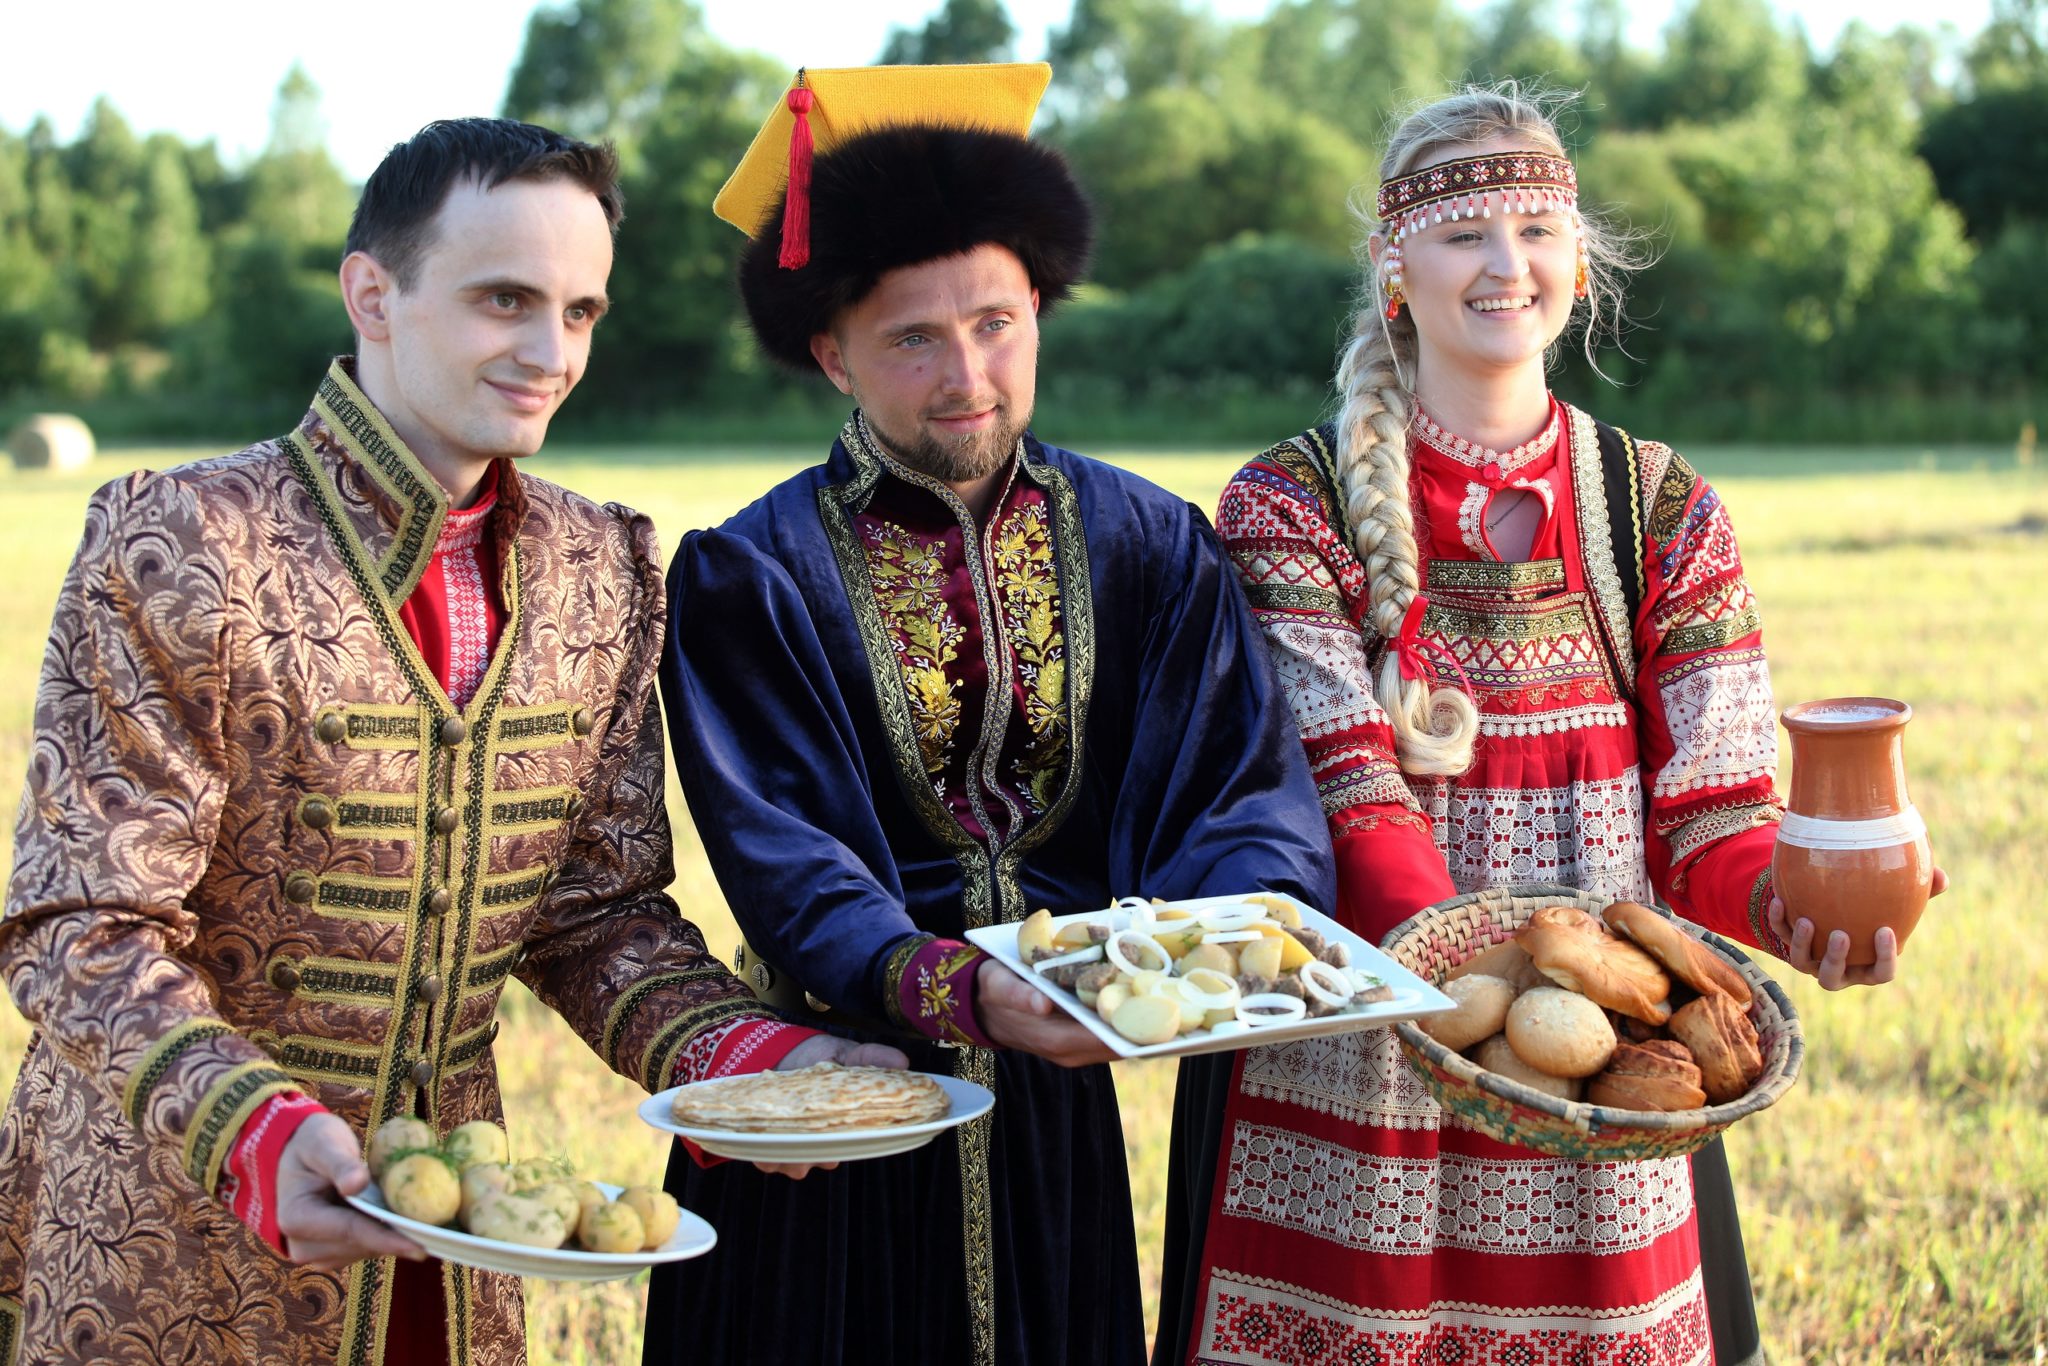 Русские народы в русских костюмах